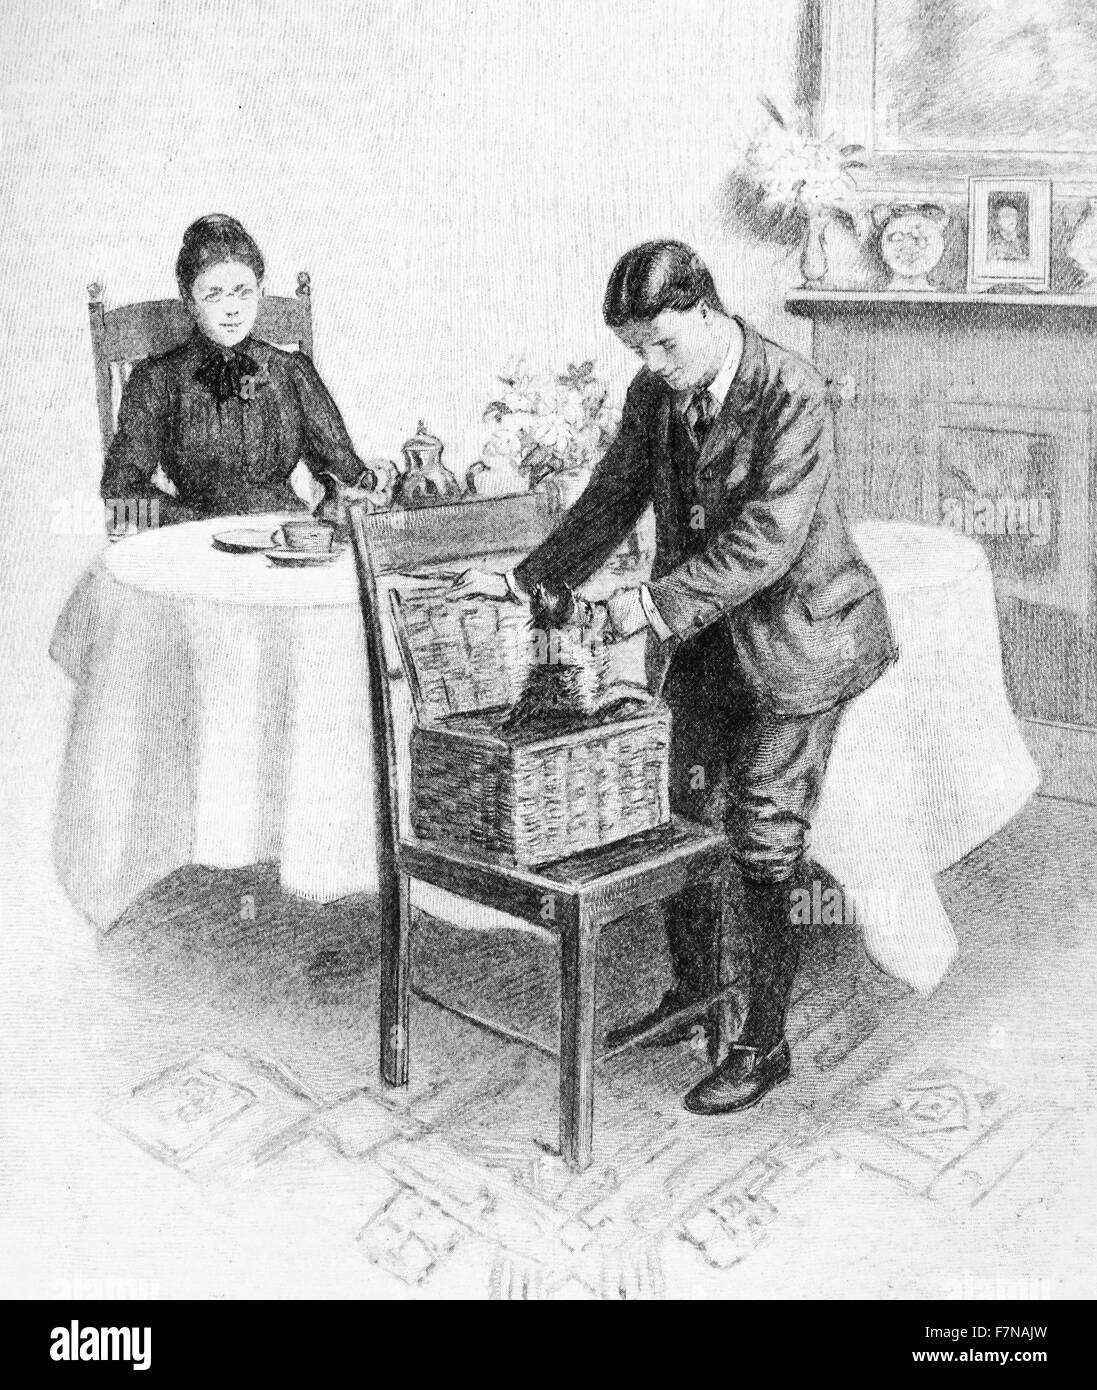 Abbildung aus einem Buch Darstellung ein Welpen aus einem Korb springen. Datiert 1913 Stockfoto